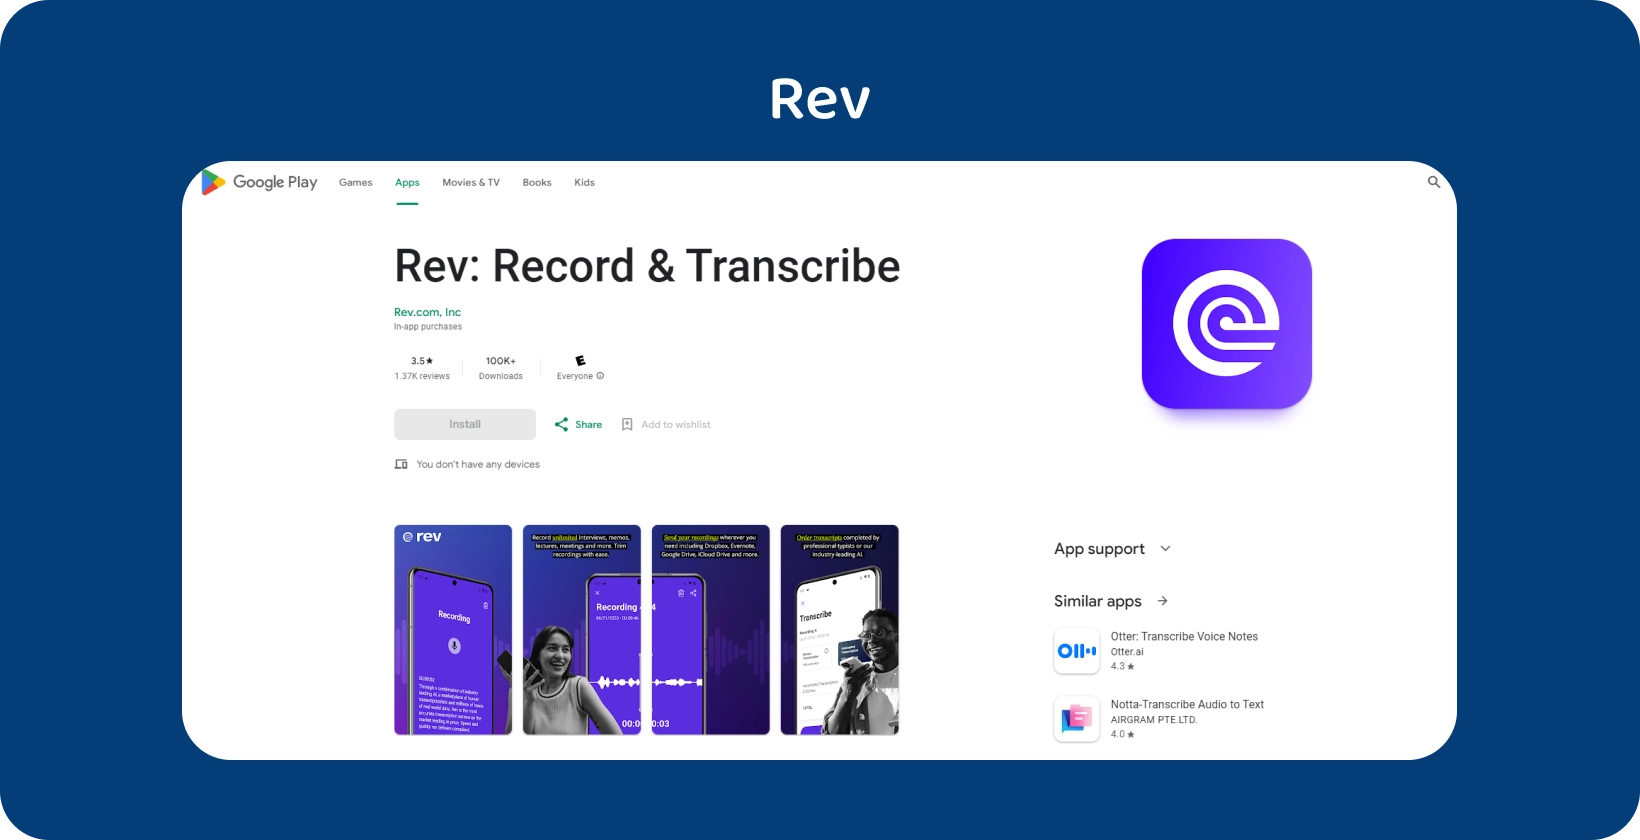 Google Play Store prikaz Rev aplikacije, naglašavajući značajke snimanja i transkripcije na Android uređajima.